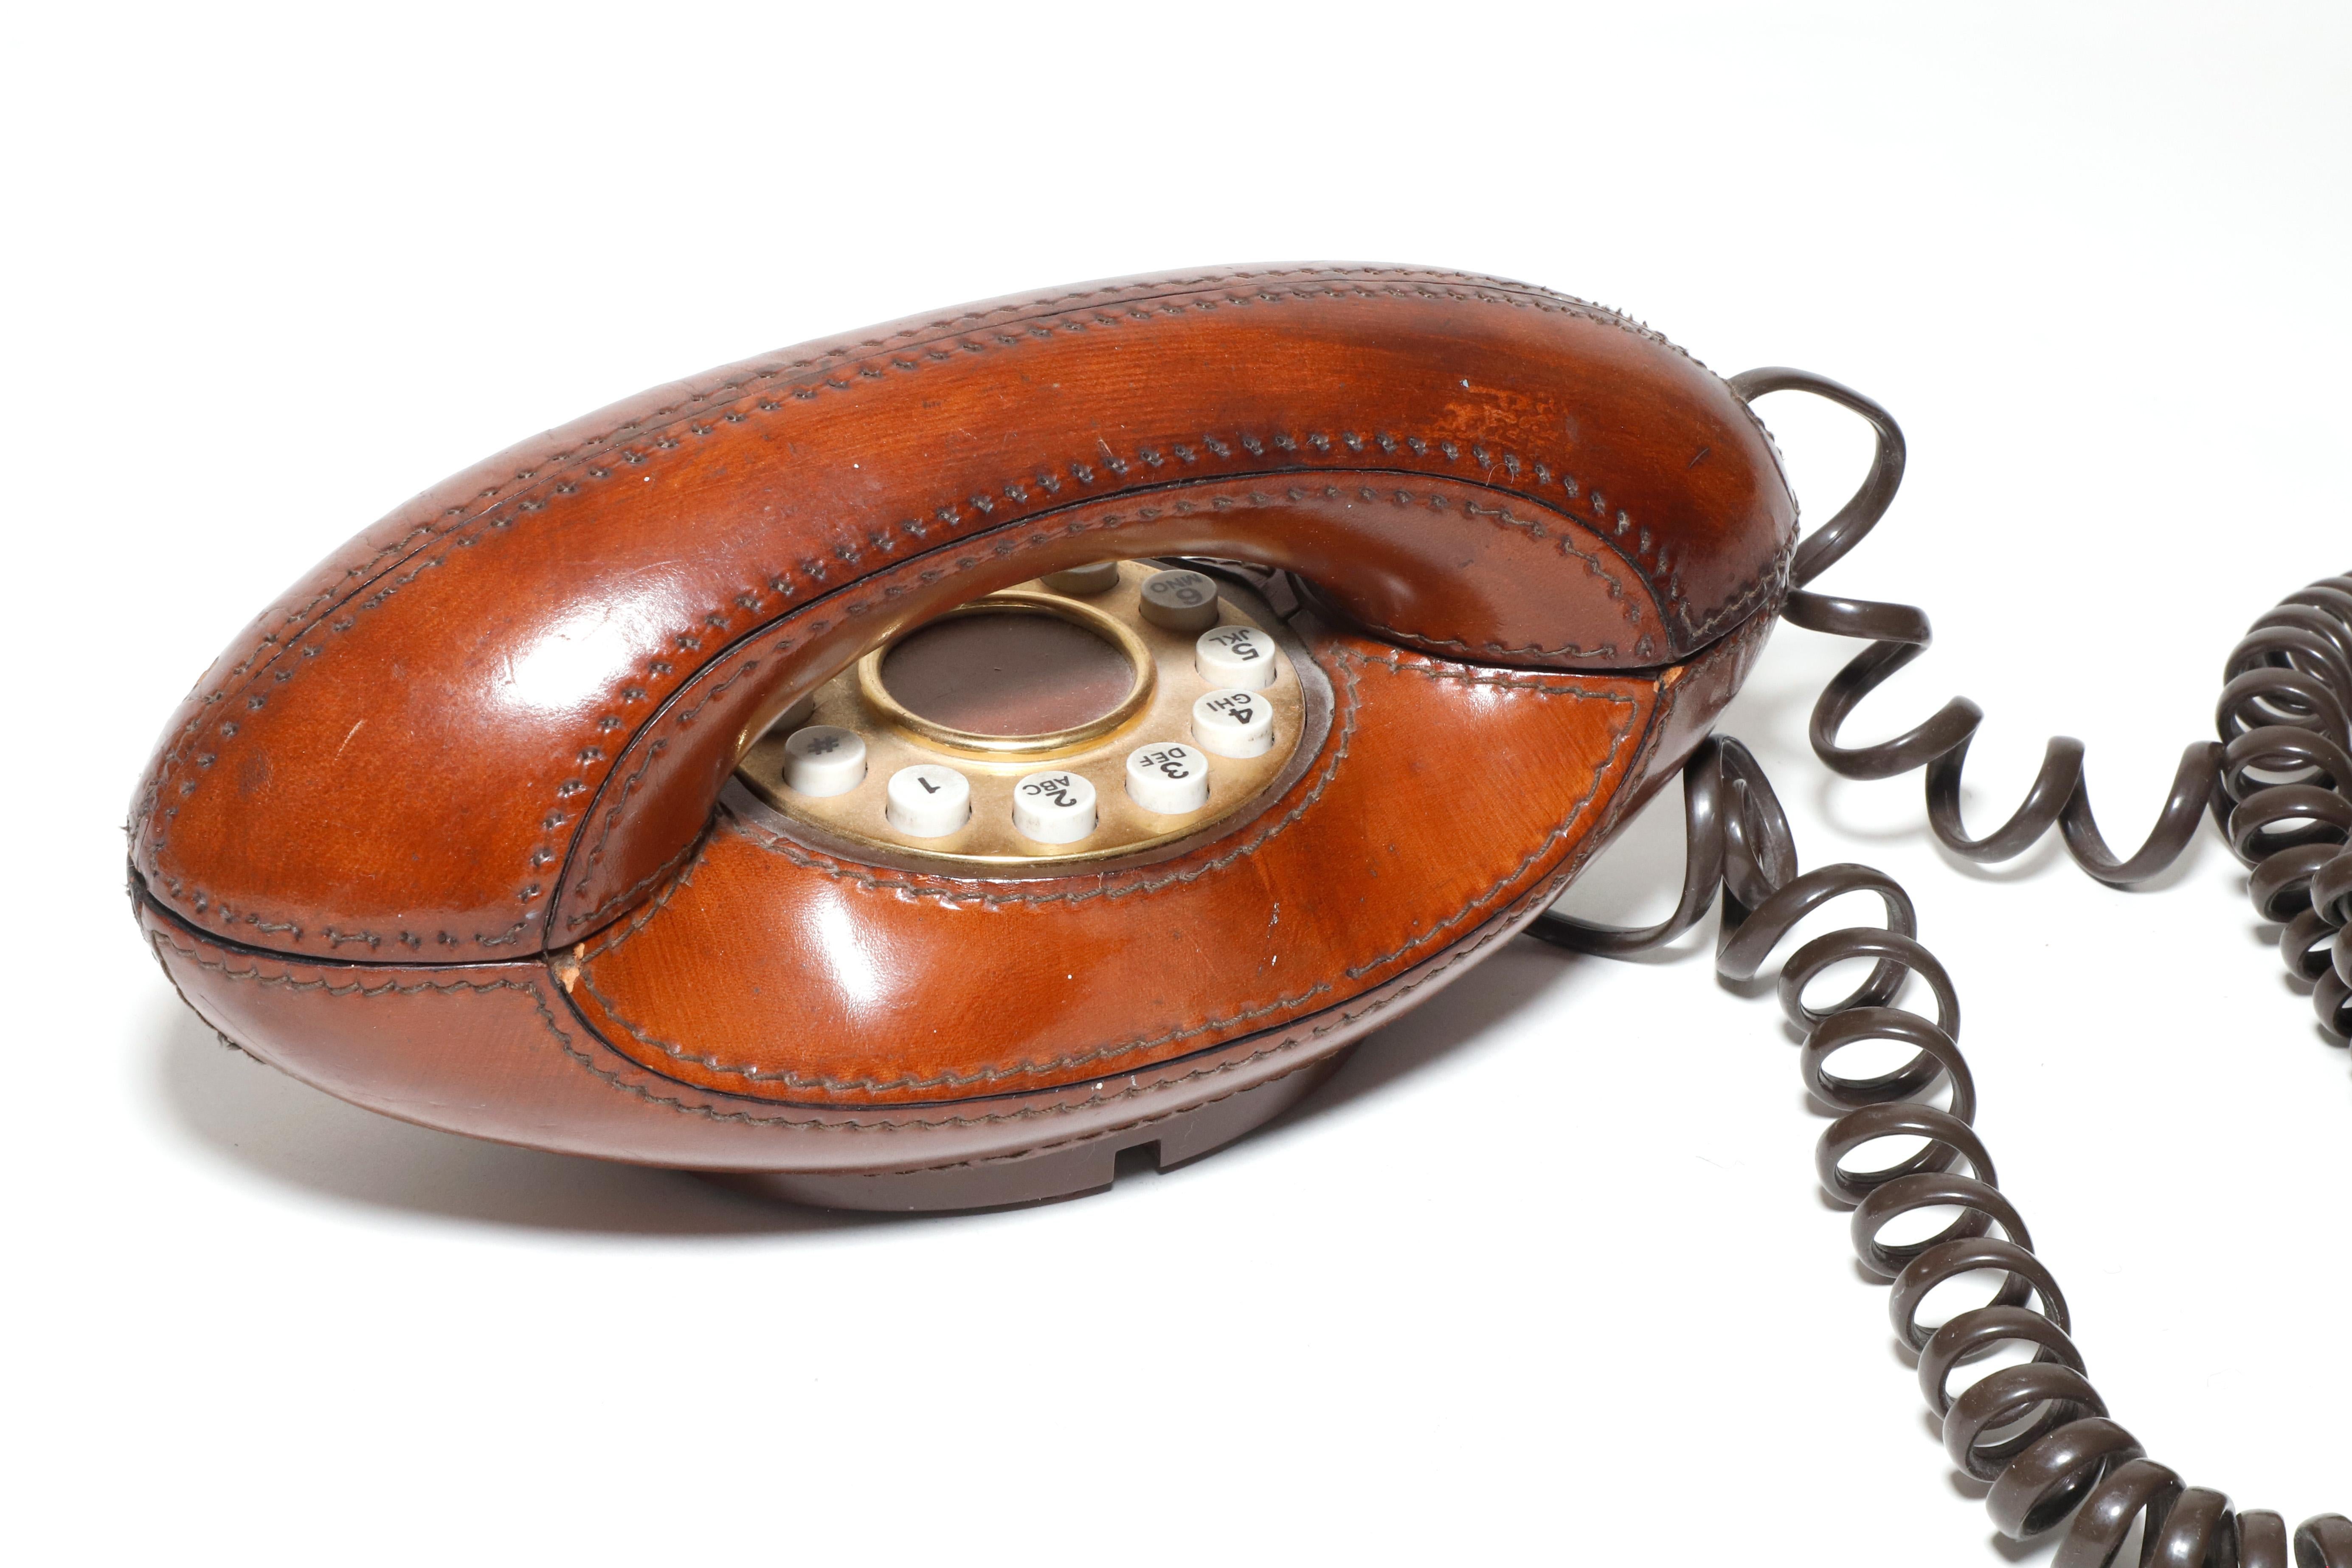 Wunderschönes, mit braunem Leder bezogenes Vintage-Telefon mit aufwendigen Nähten und Messingplatte um die Drucktasten. Hergestellt von Genie und entworfen in den späten 1970er Jahren in den USA. Dieses Modell erfreute sich zu seiner Zeit großer